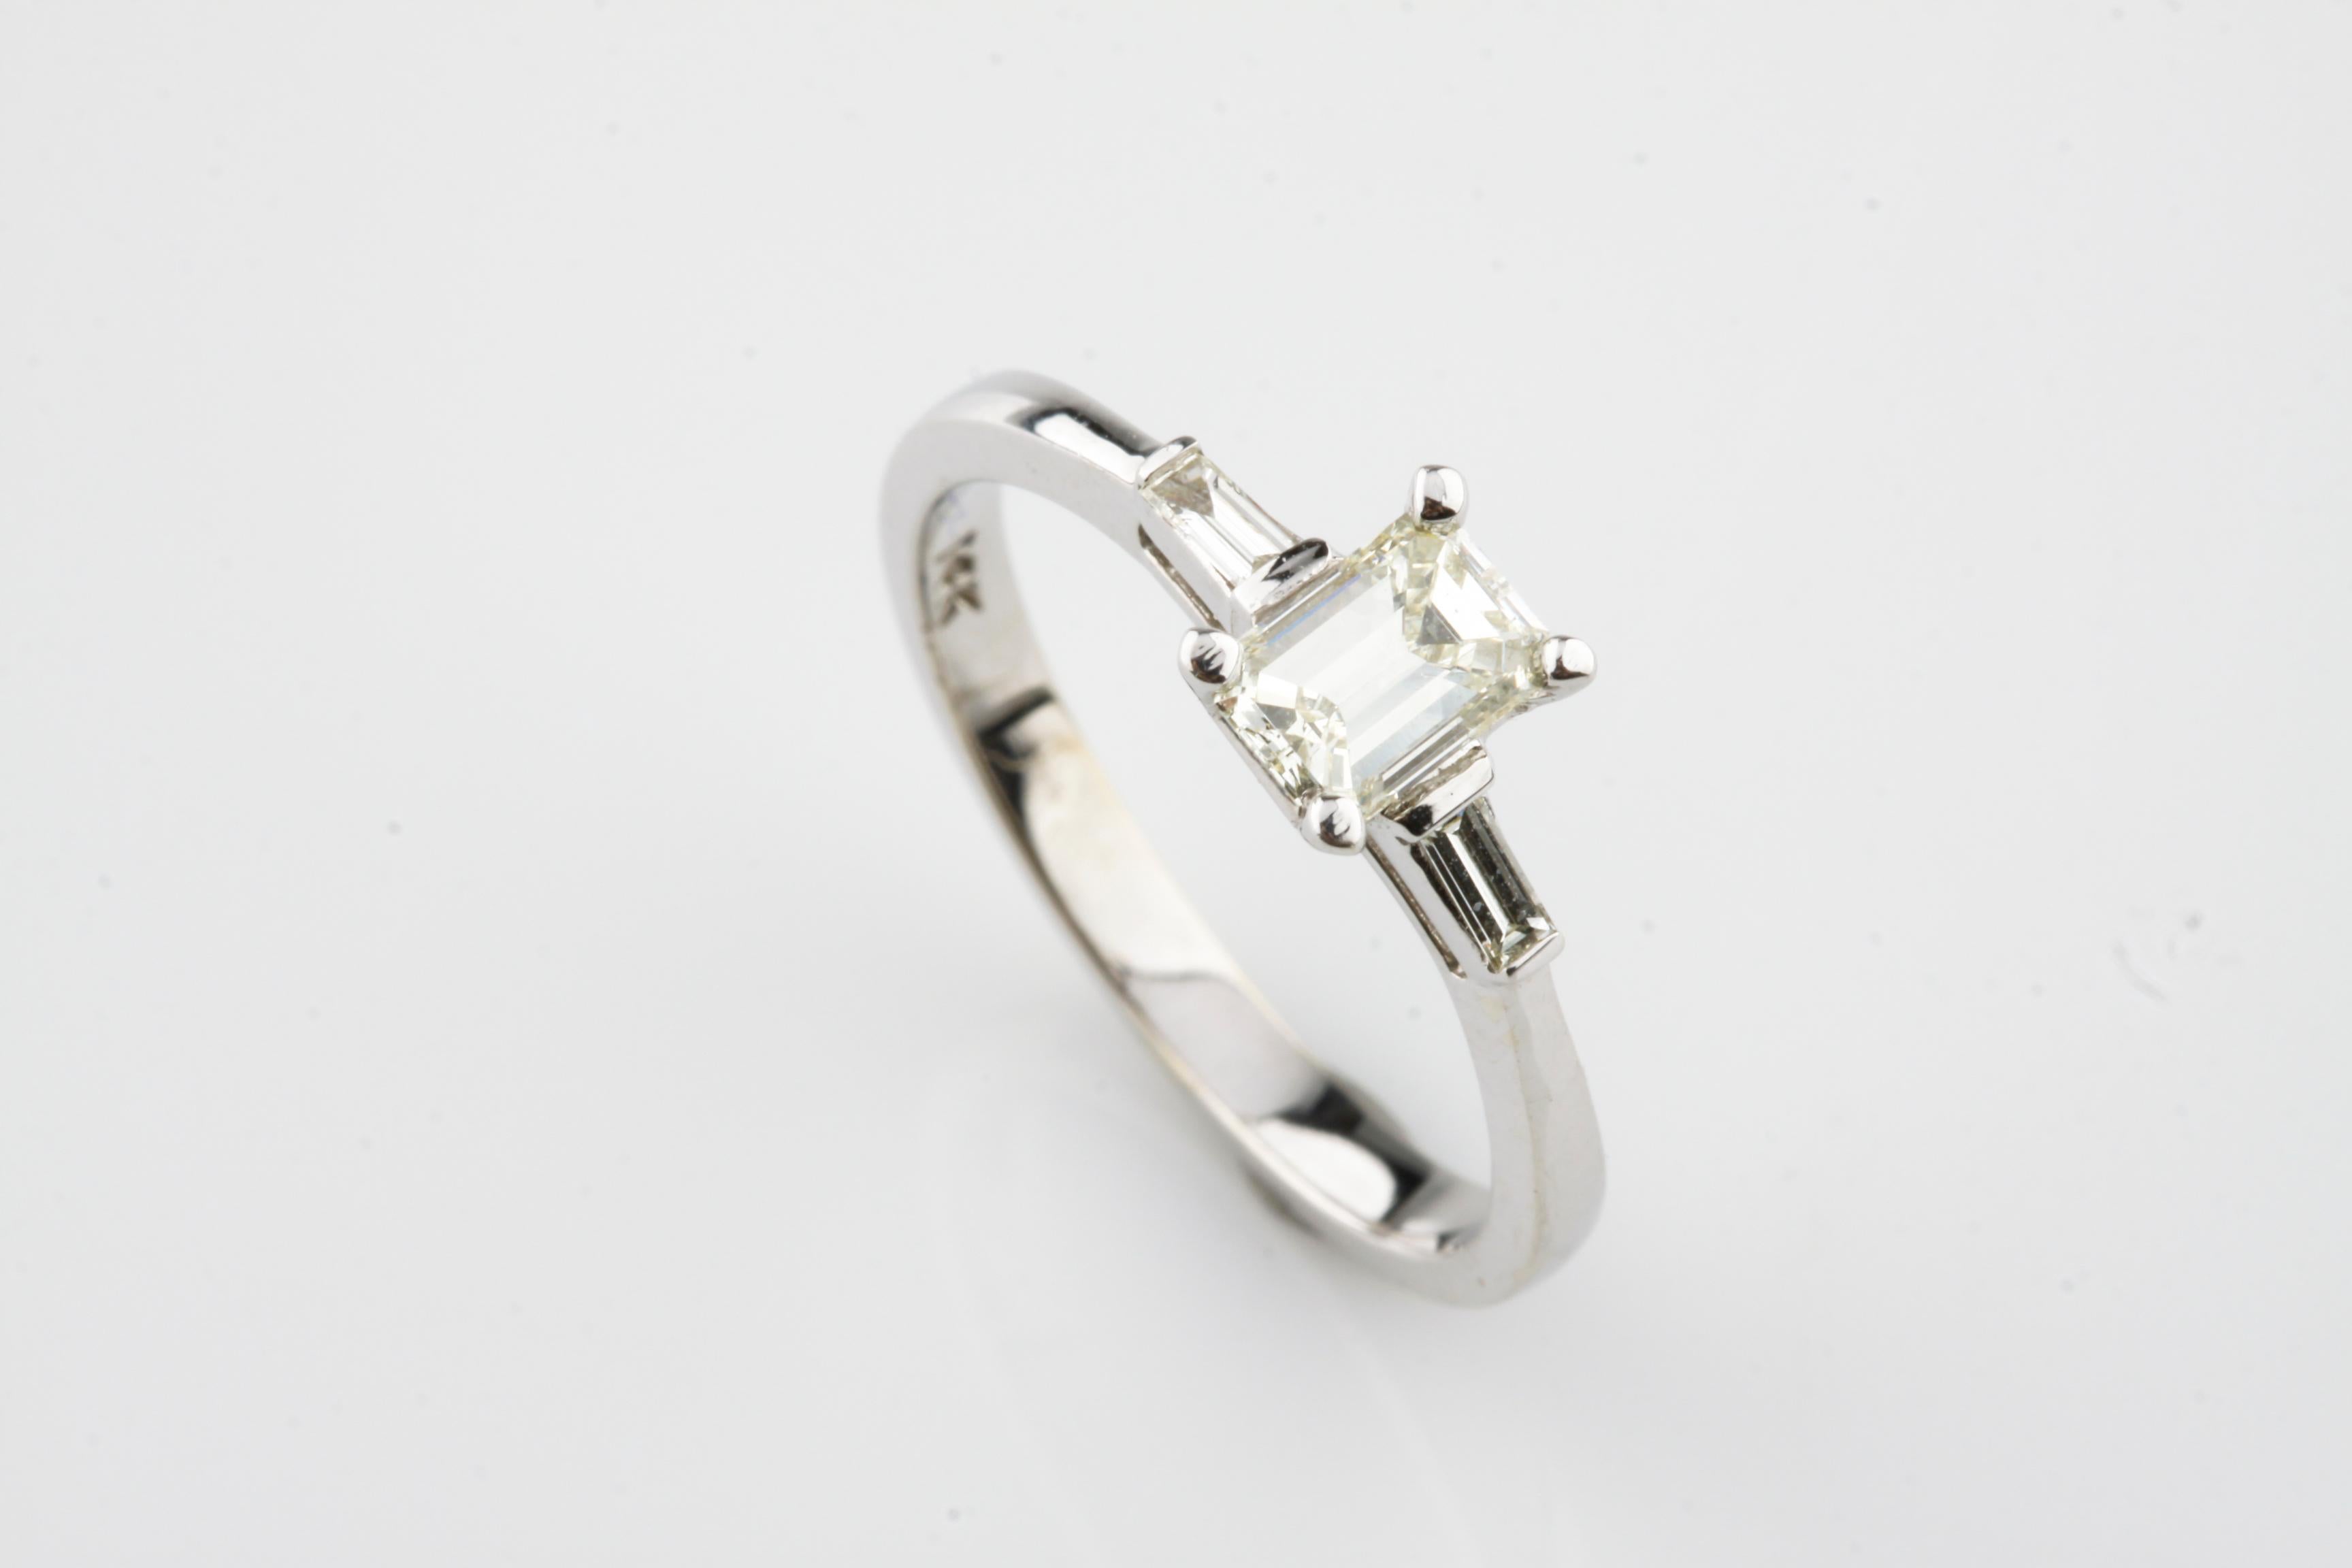 Eine elektronisch geprüfte 14KT Weißgold Damen gegossen Diamant Einheit Ring mit einer glänzenden Oberfläche.
Der Zustand ist gut.
Erkennbar an der Kennzeichnung 